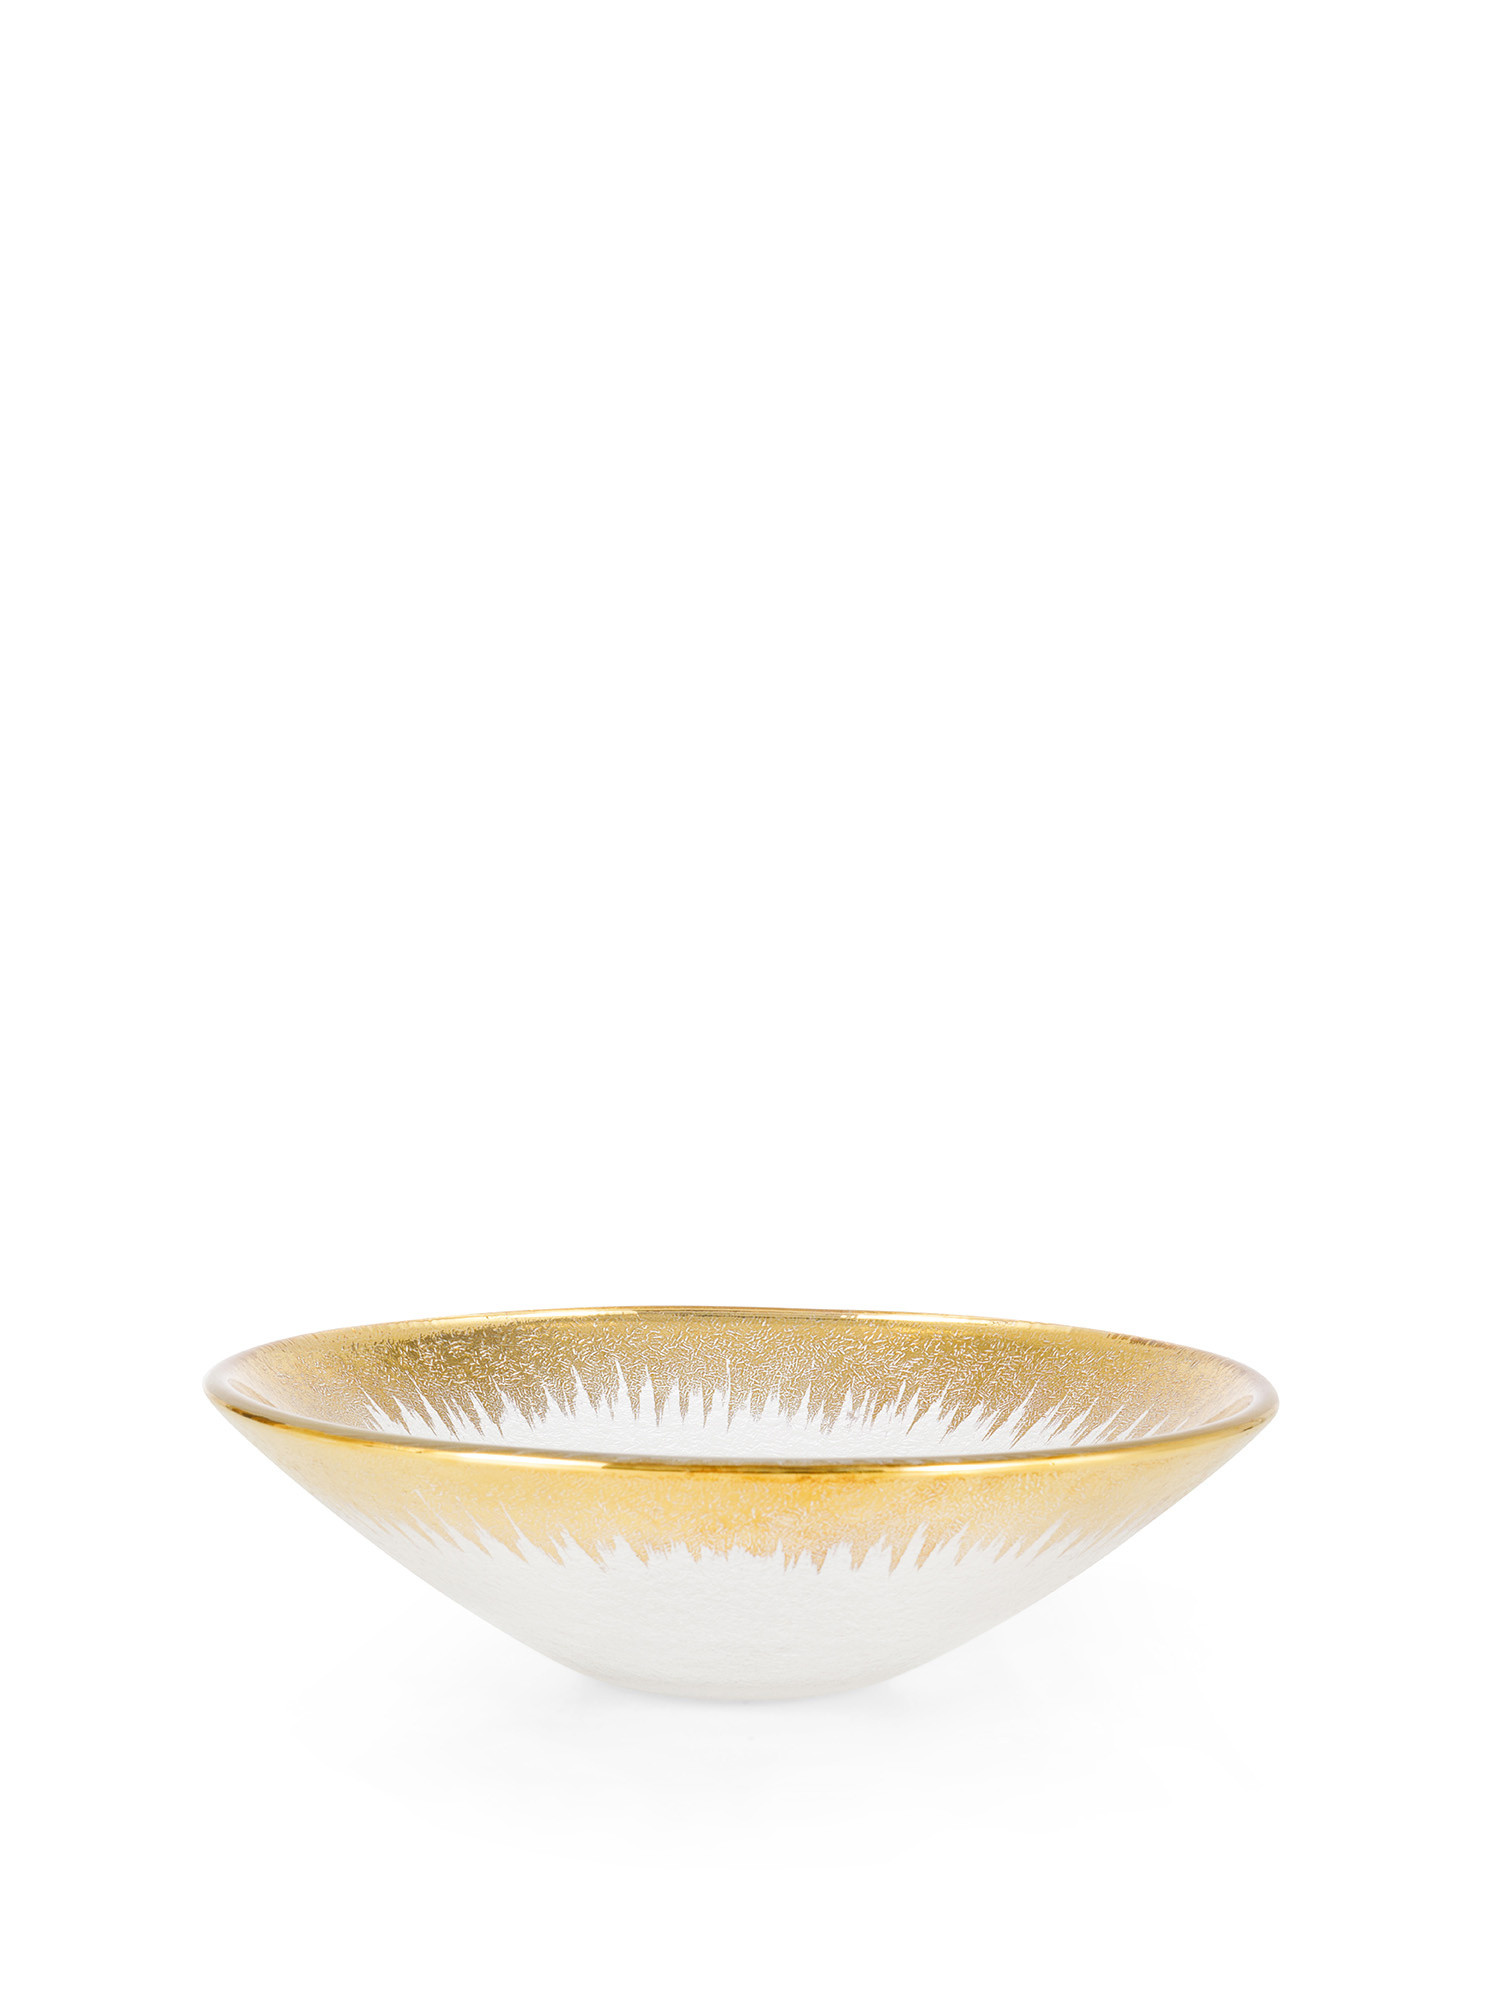 Coppa vetro con bordo oro sfumato, Trasparente, large image number 0